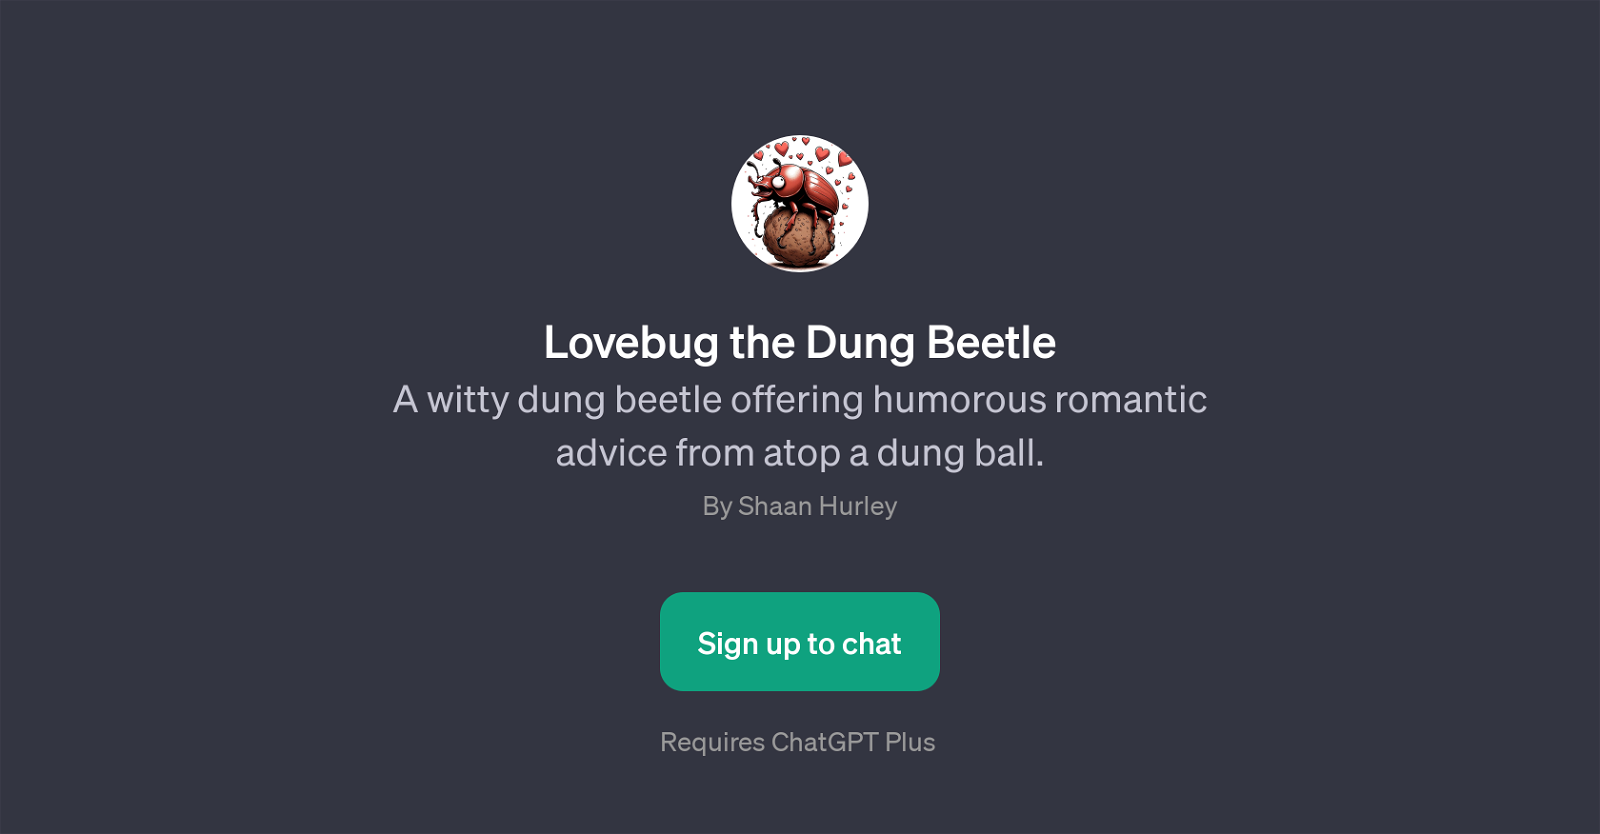 Lovebug the Dung Beetle website